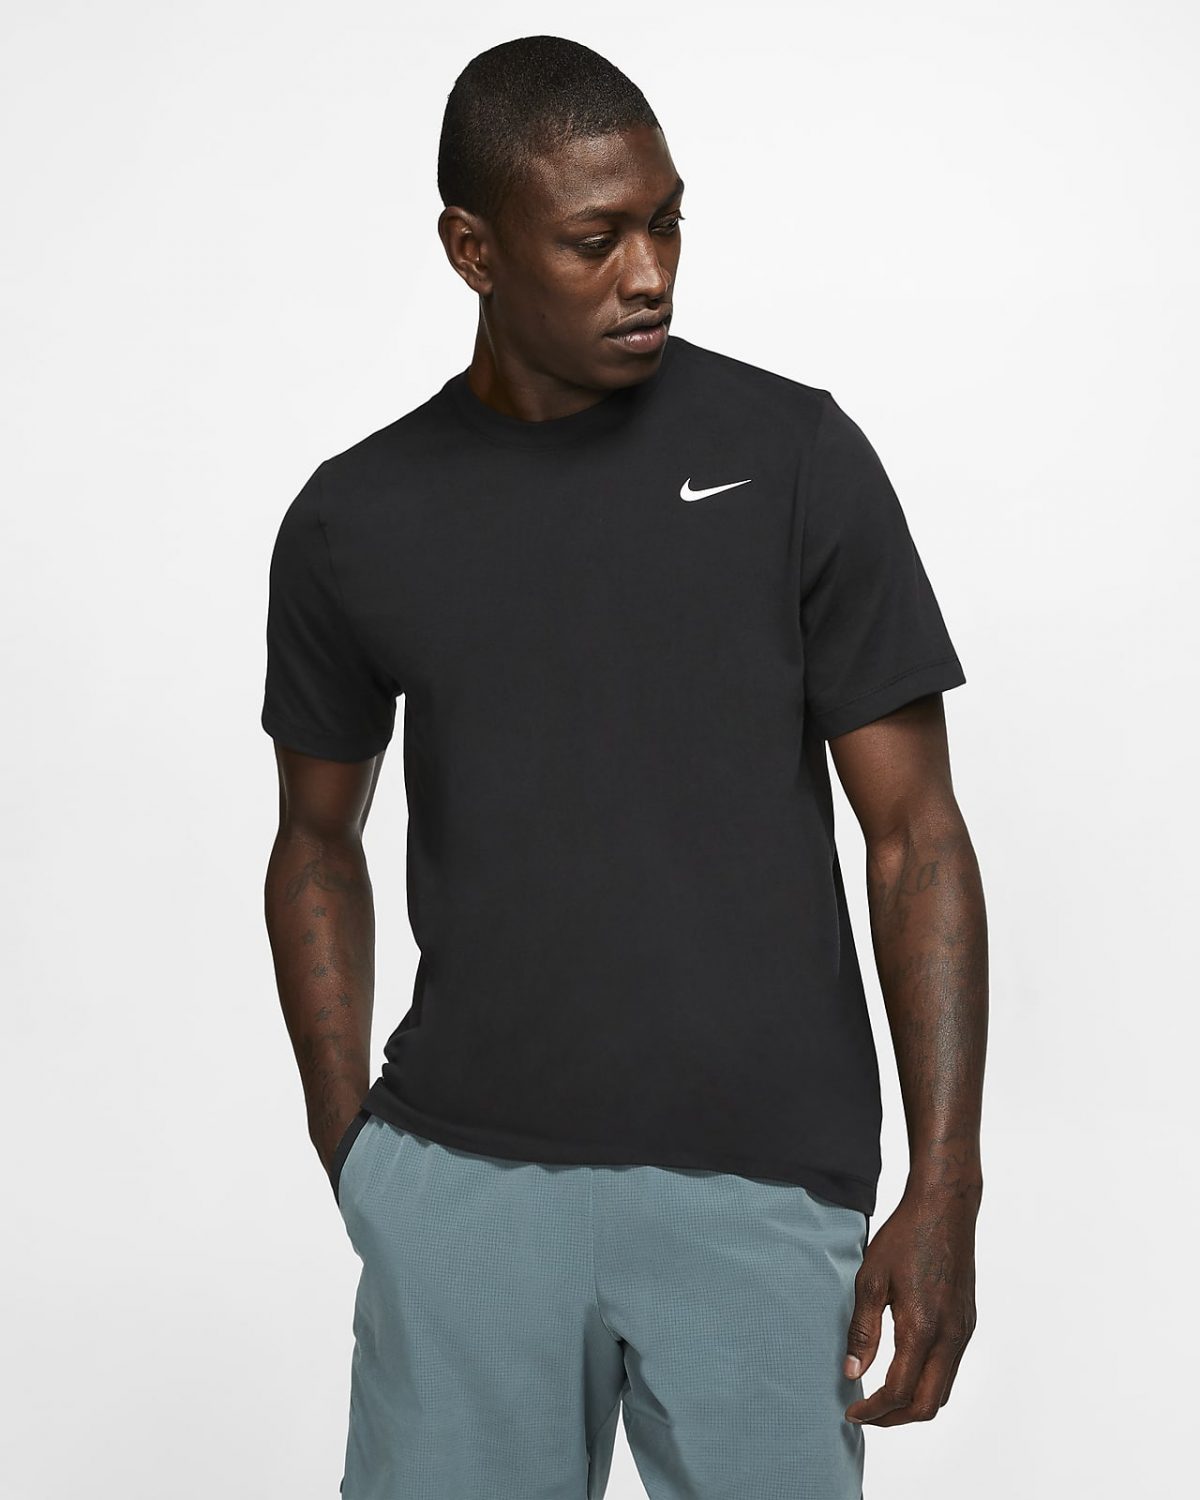 Мужская футболка Nike Dri-FIT фото